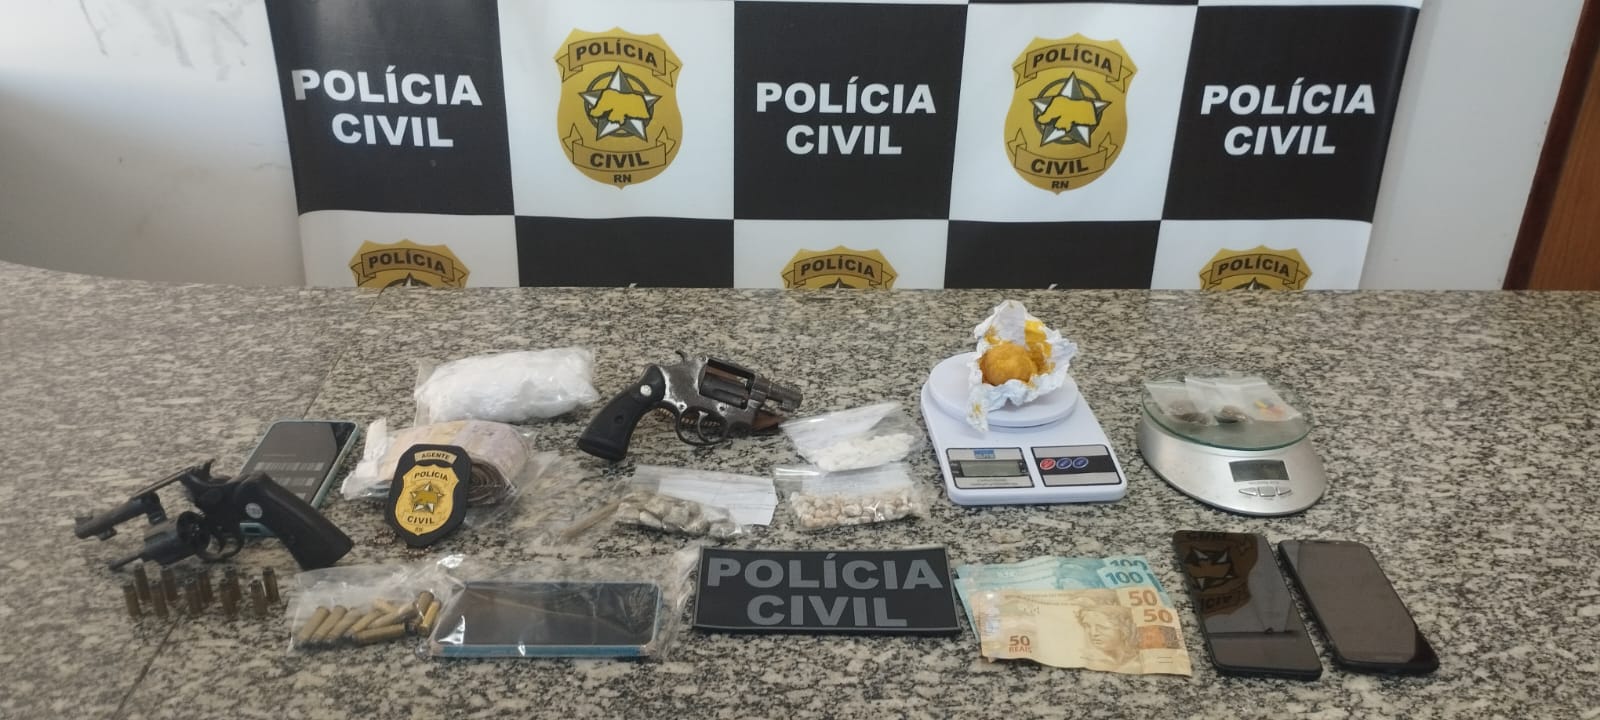 Polícia Civil deflagra operação para combater facção criminosa em Pau dos Ferros; três pessoas foram presas